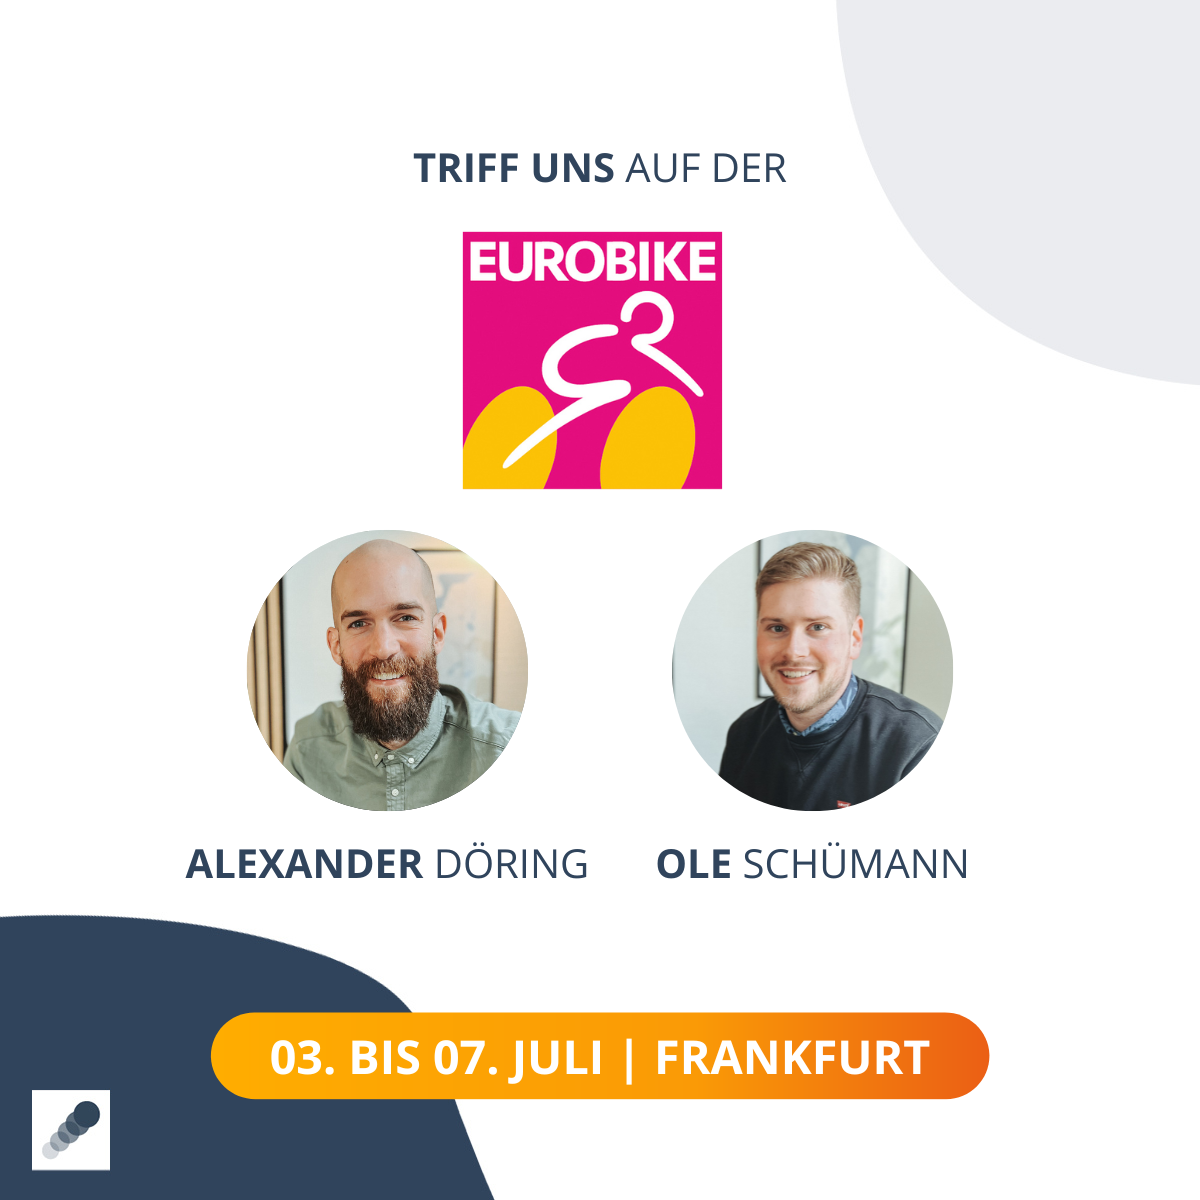 Triff Alexander Döring und Ole Schümann auf der Eurobike am 03.-07.Juli